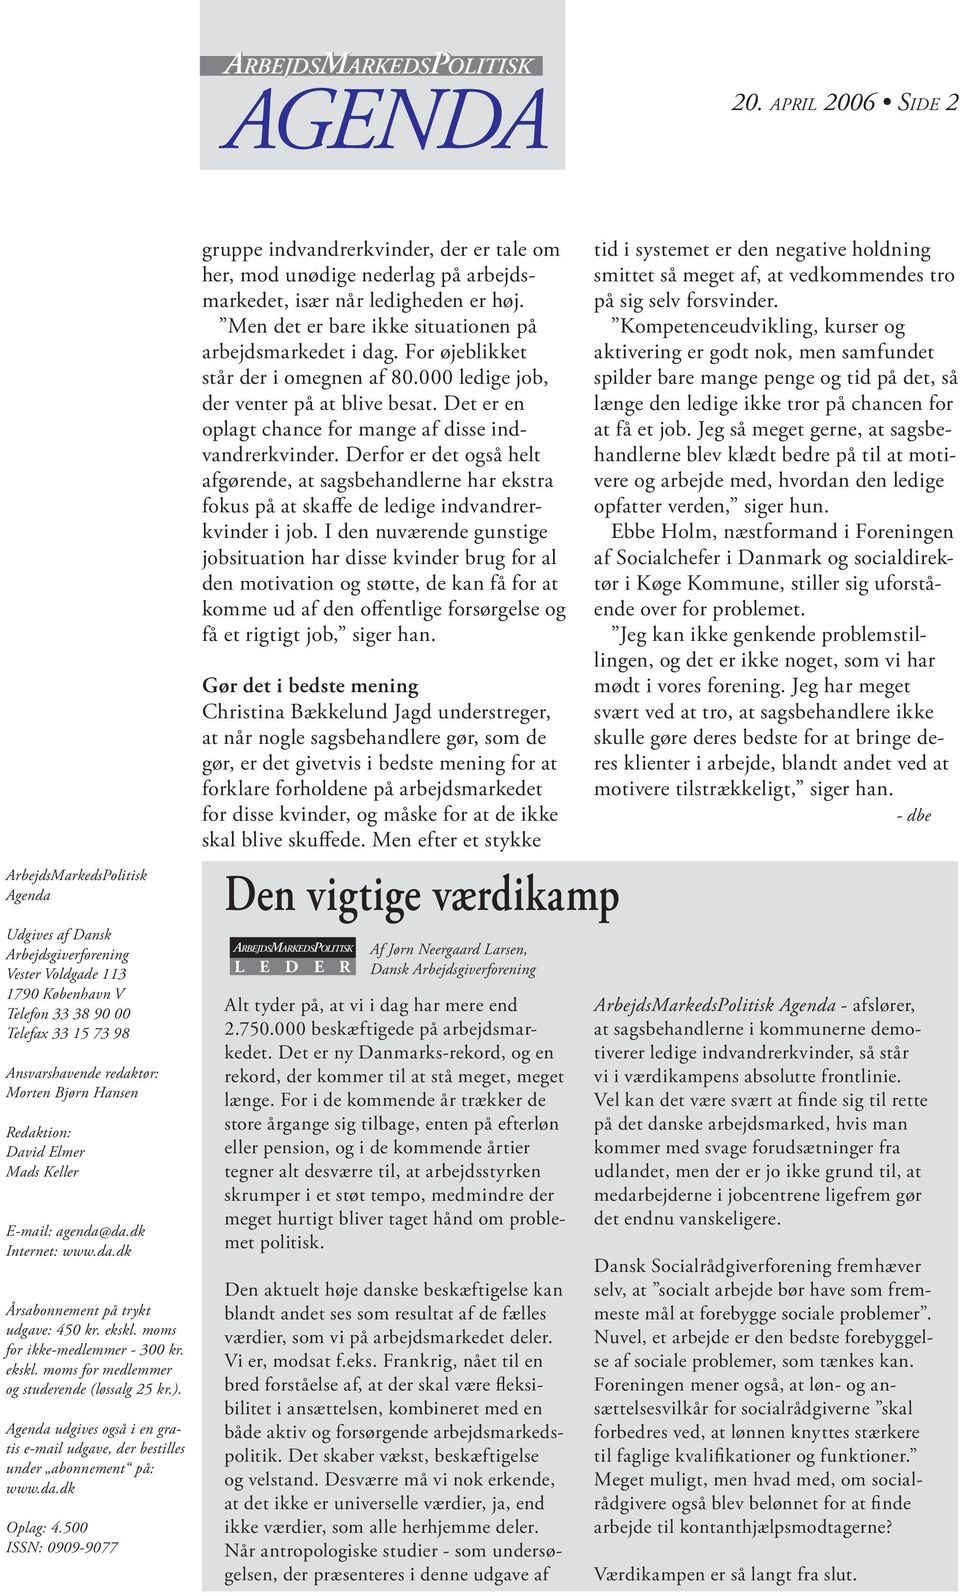 Agenda udgives også i en gratis e-mail udgave, der bestilles under abonnement på: www.da.dk Oplag: 4.